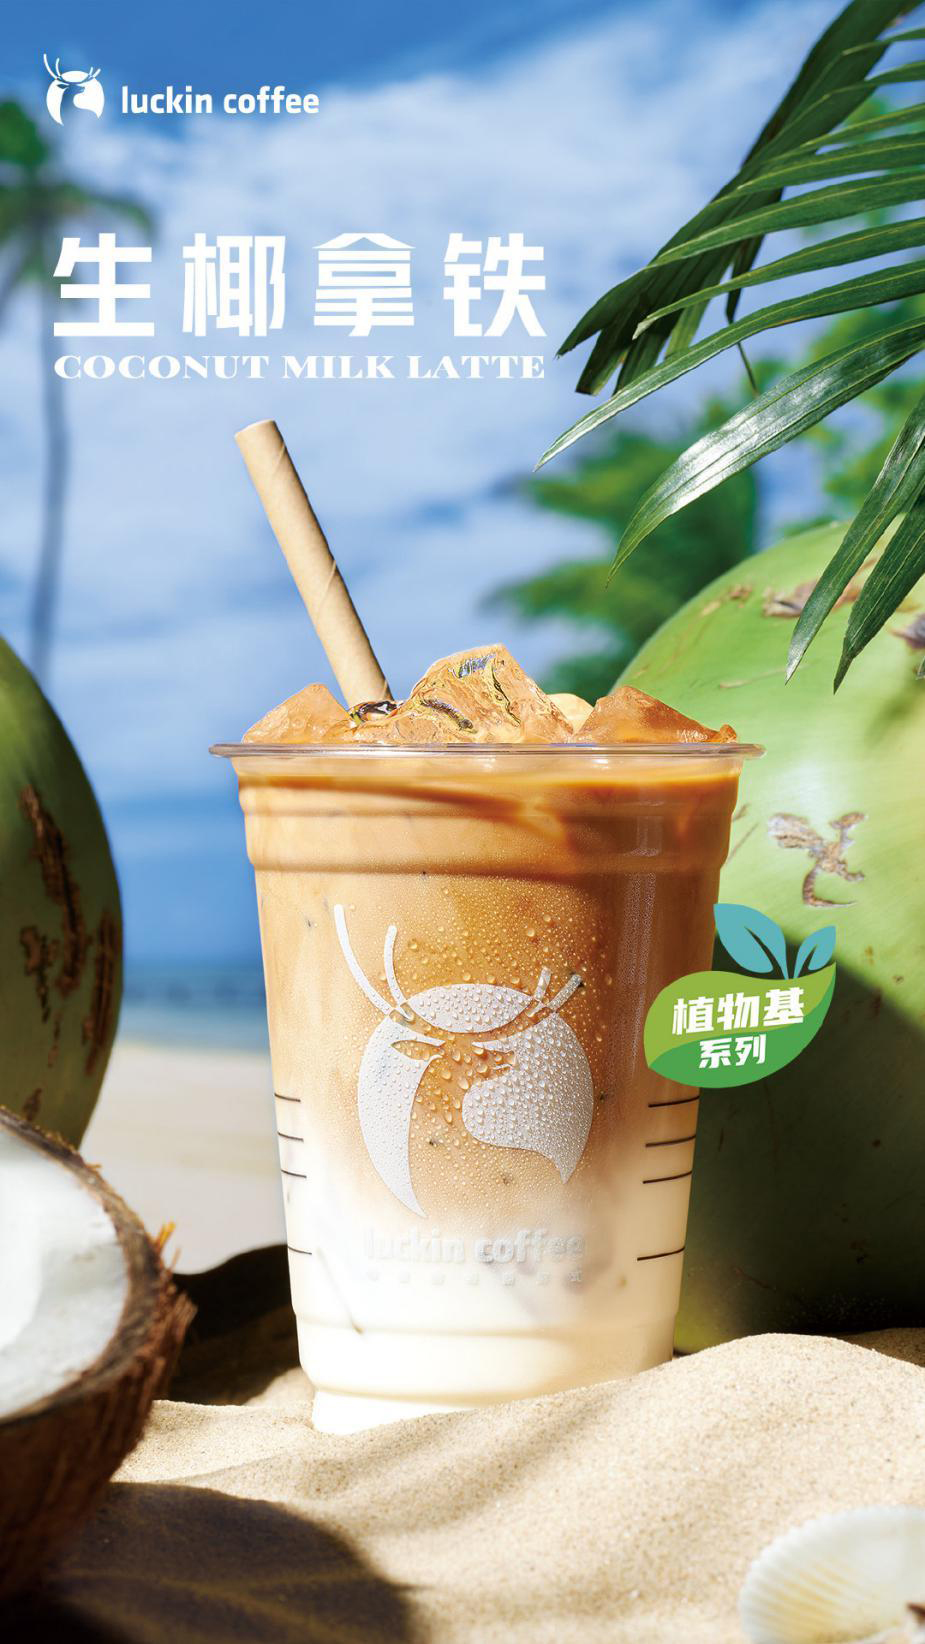 Dòng Sữa Dừa nổi tiếng, bao gồm cà phê và matcha latte làm từ nguyên liệu ép lạnh. sữa dừa. Hãy theo dõi để biết thêm thông tin cập nhật.